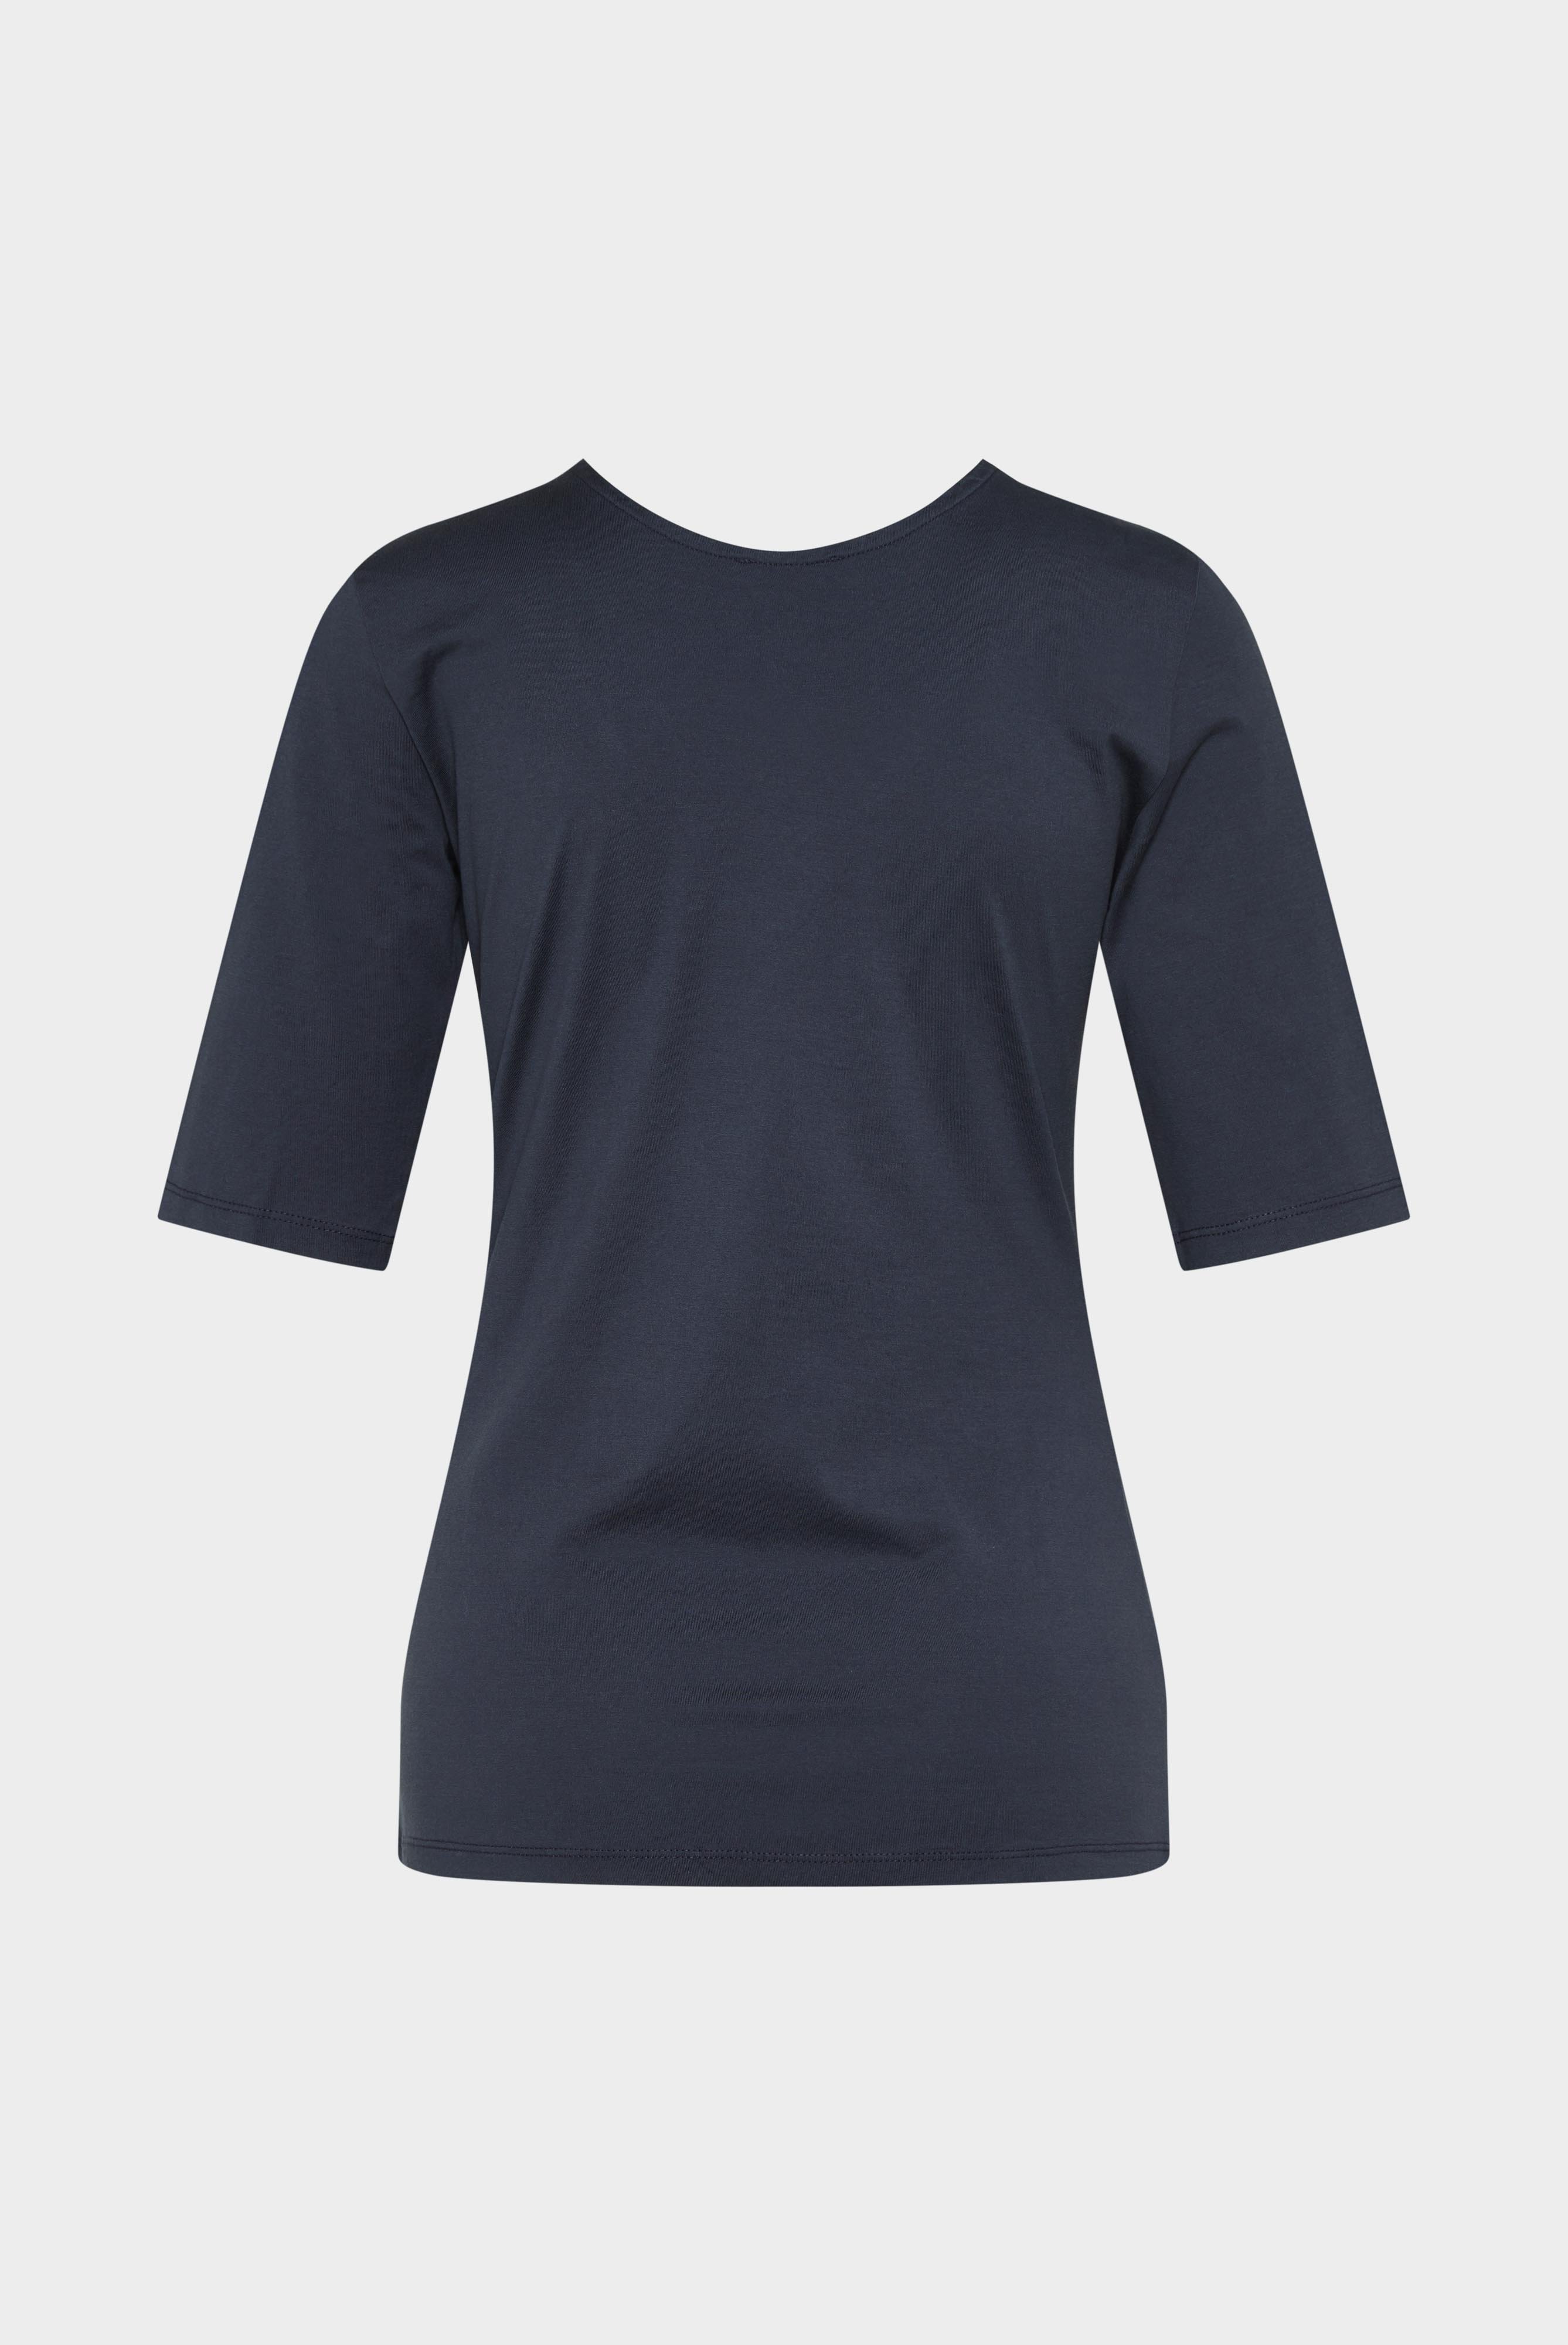 Tops & T-Shirts+Urban Jersey Wide Neck T-Shirt+05.2911..Z20044.790.XL